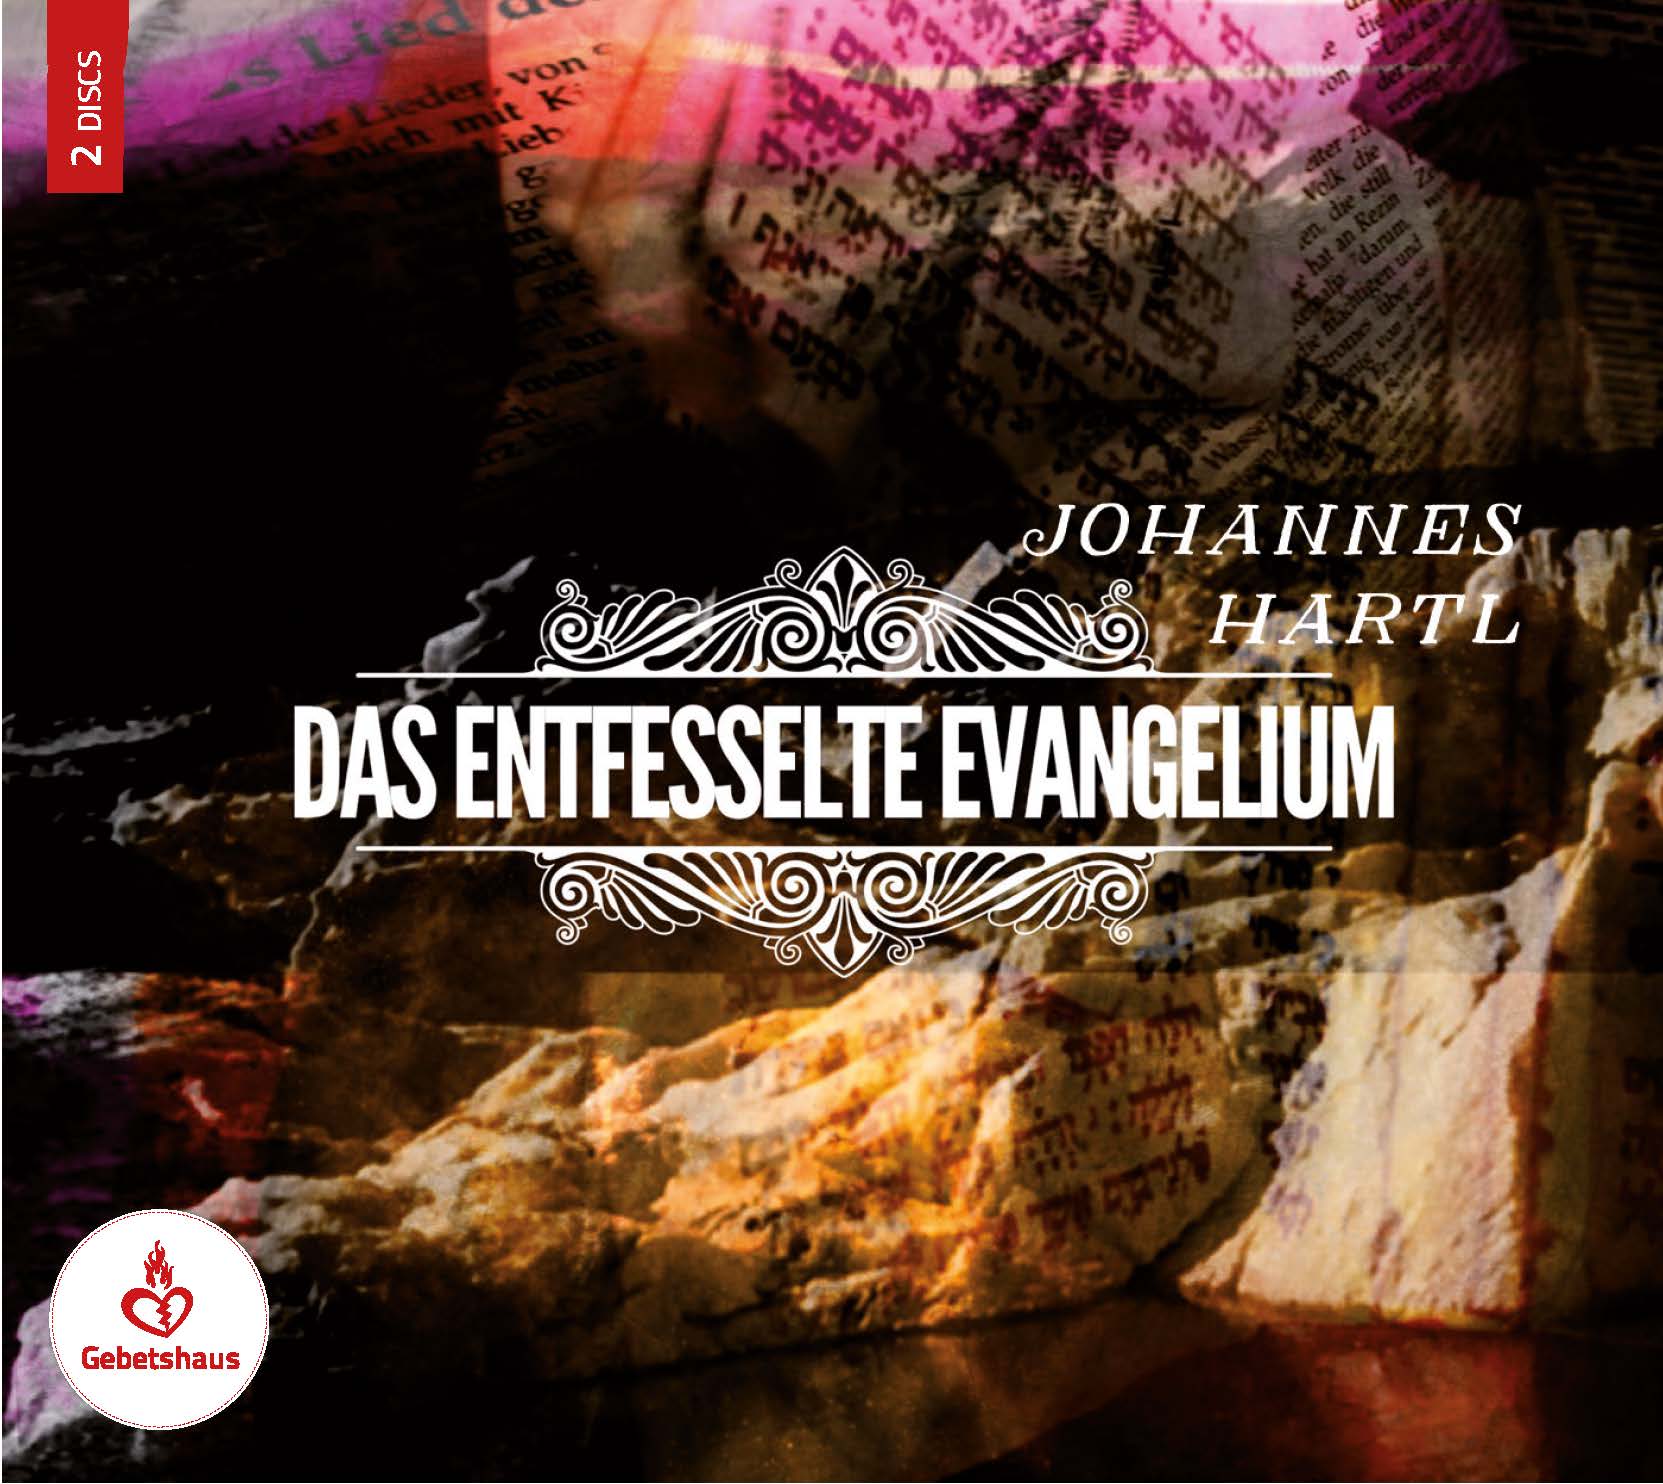 Das entfesselte Evangelium - MEHR 2018 | CD - Gebetshaus Augsburg | Shop